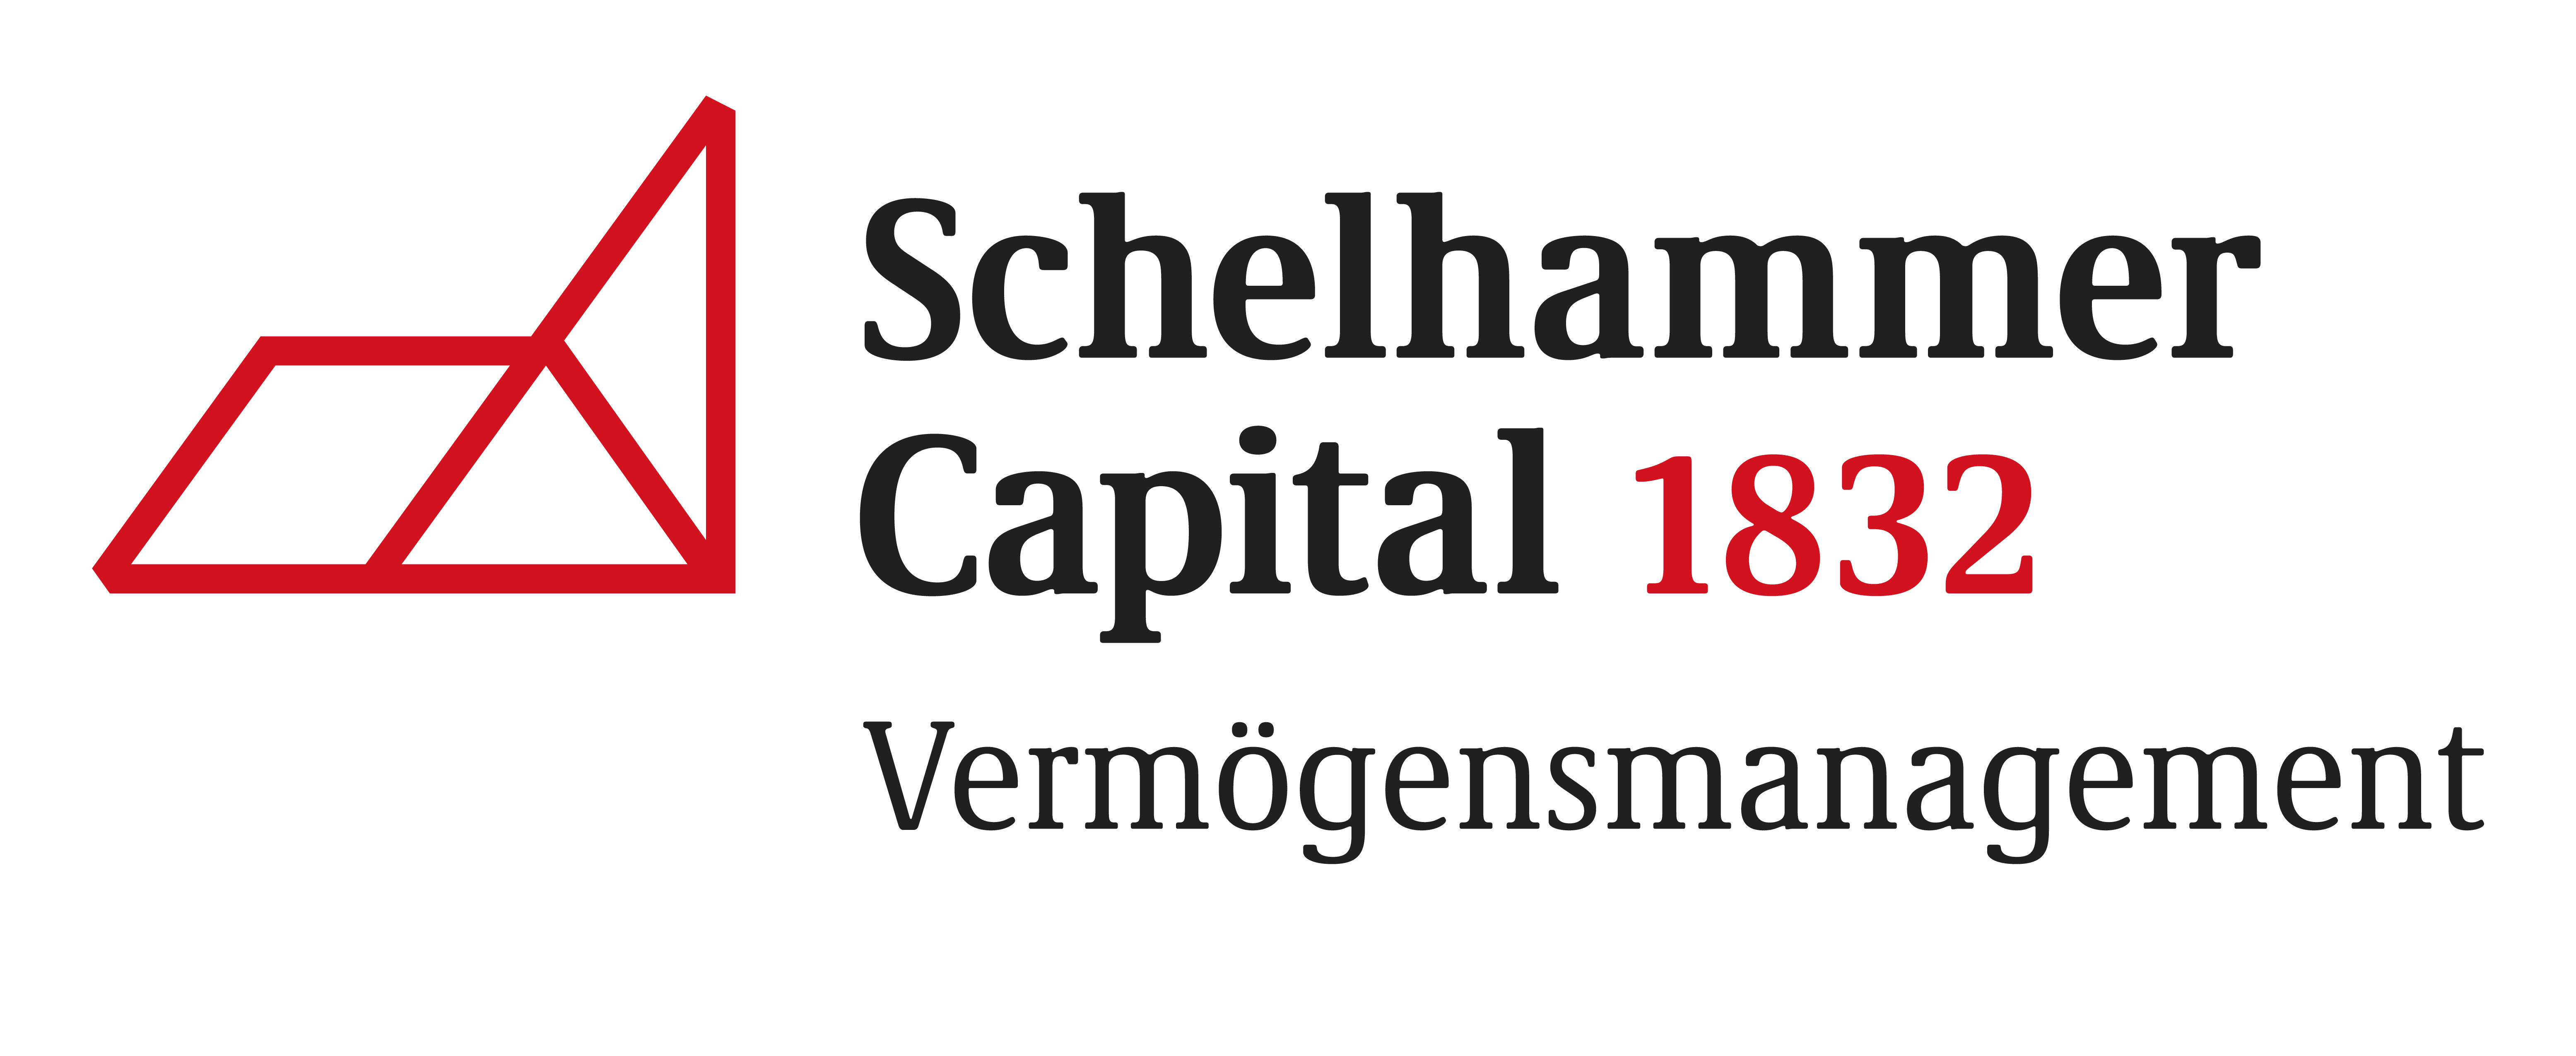 Vermögensmanagement Schelhammer Capital Bank AG